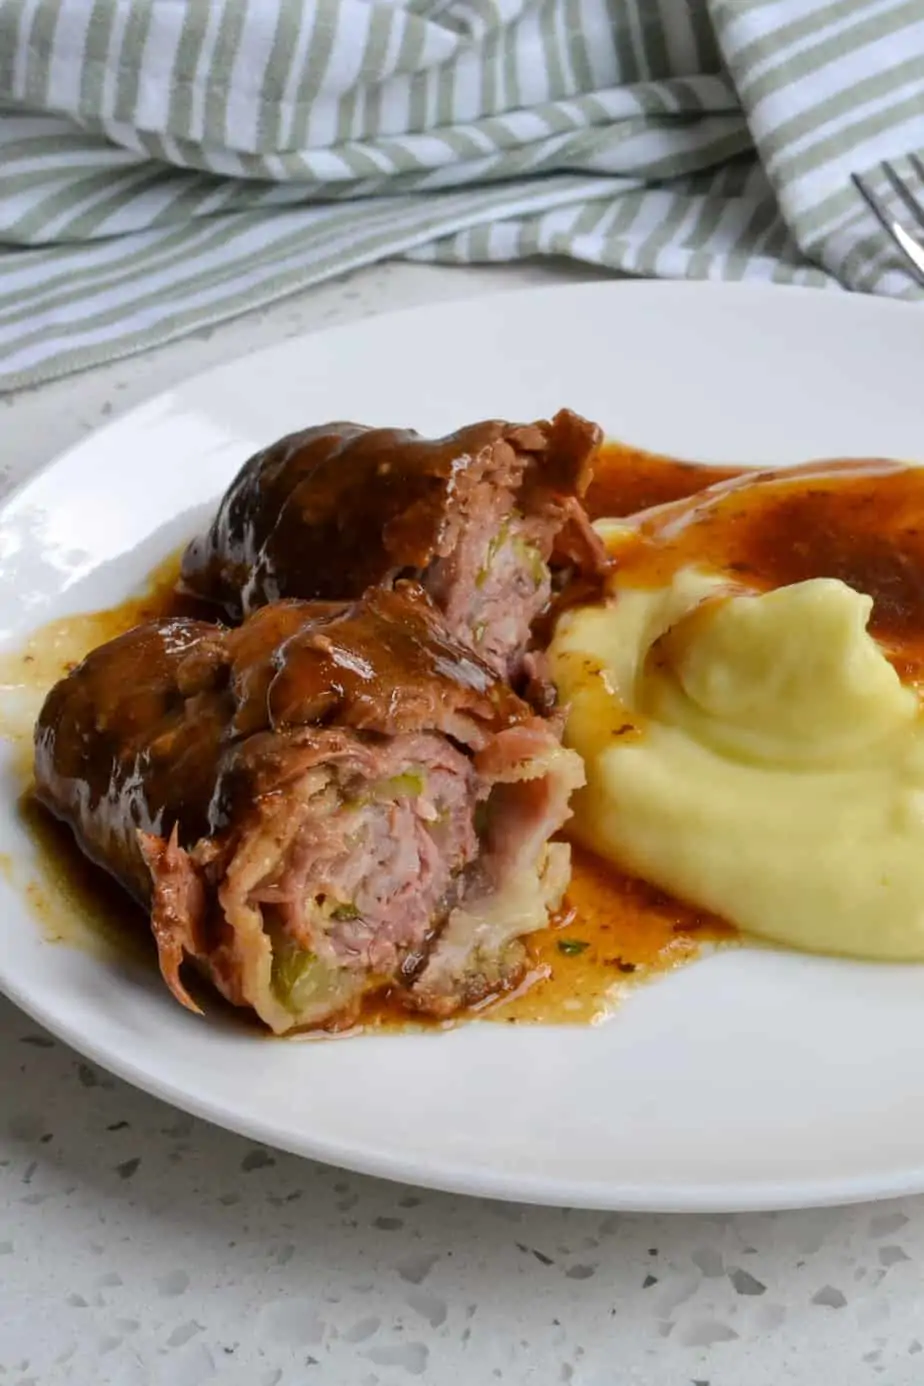 으깬 감자와 함께 접시에 독일 쇠고기 룰라 덴.